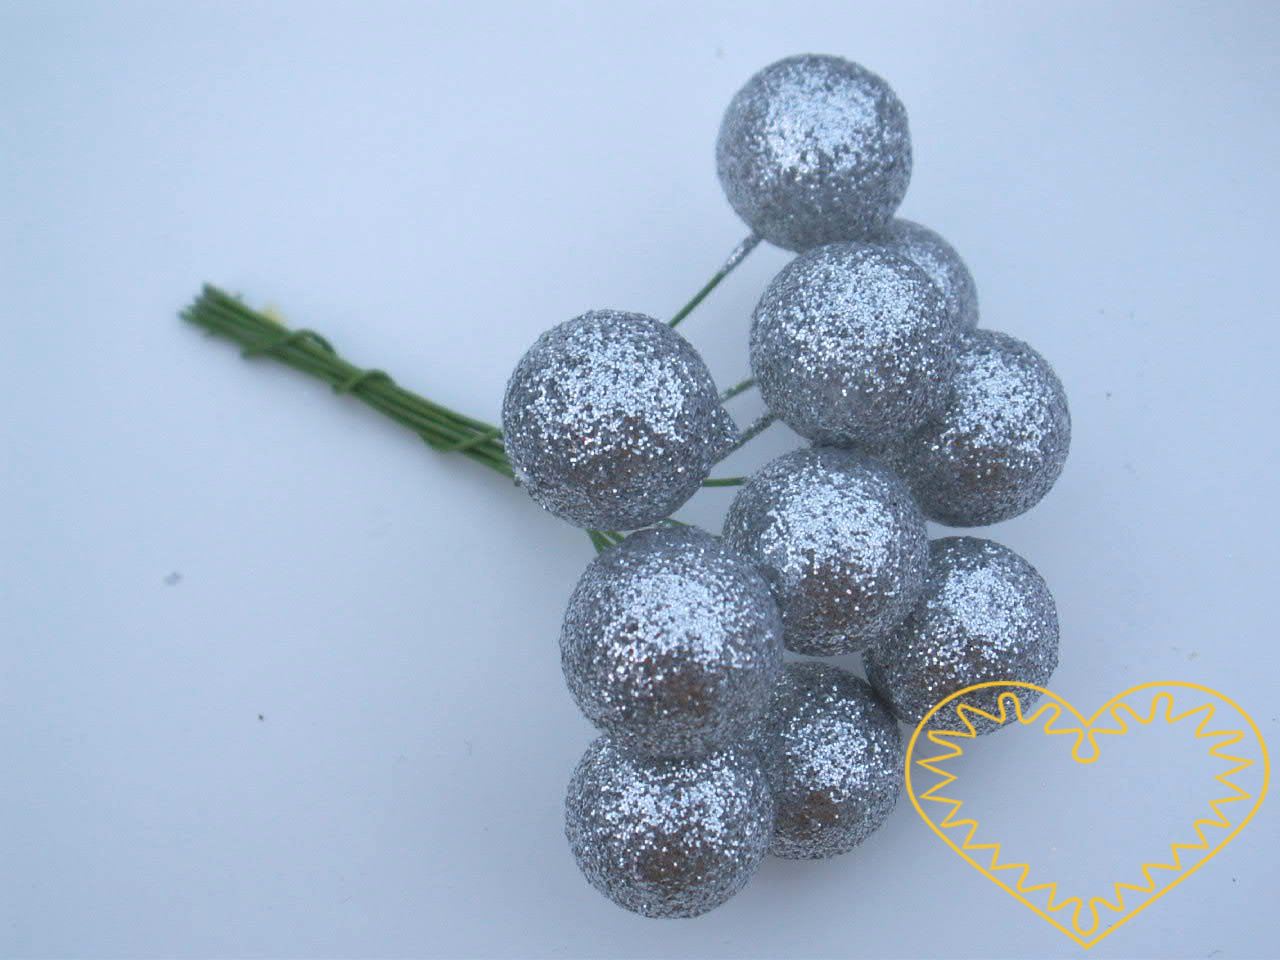 Stříbrné koule na drátcích průměr 2 cm - 180 ks. Polystyrenové koule polepené stříbrnými glitry jsou lehké. Každá koule je upevněna na drátku o délce cca 10 cm.